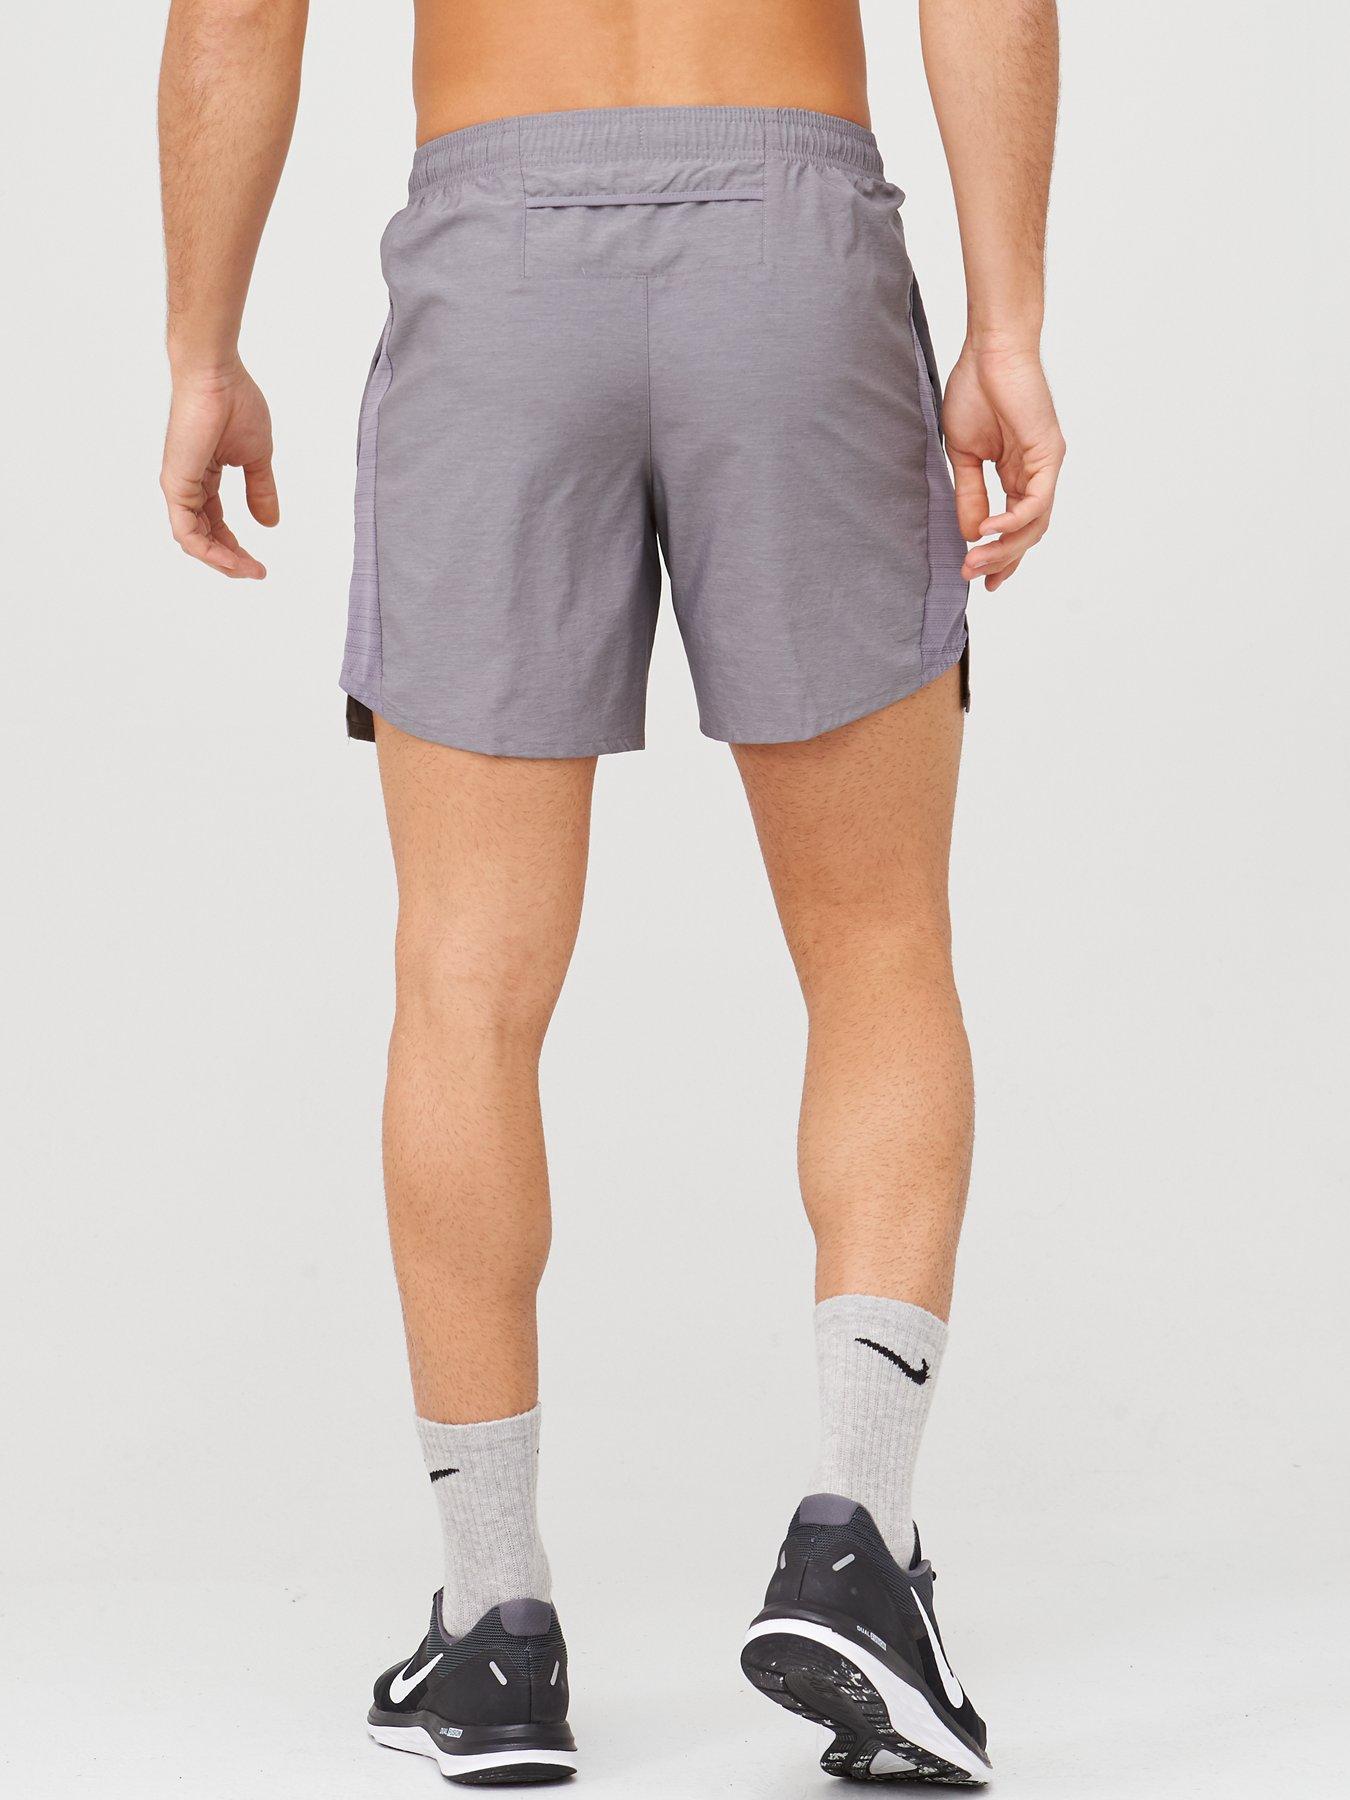 nike flex 7 inch running shorts 